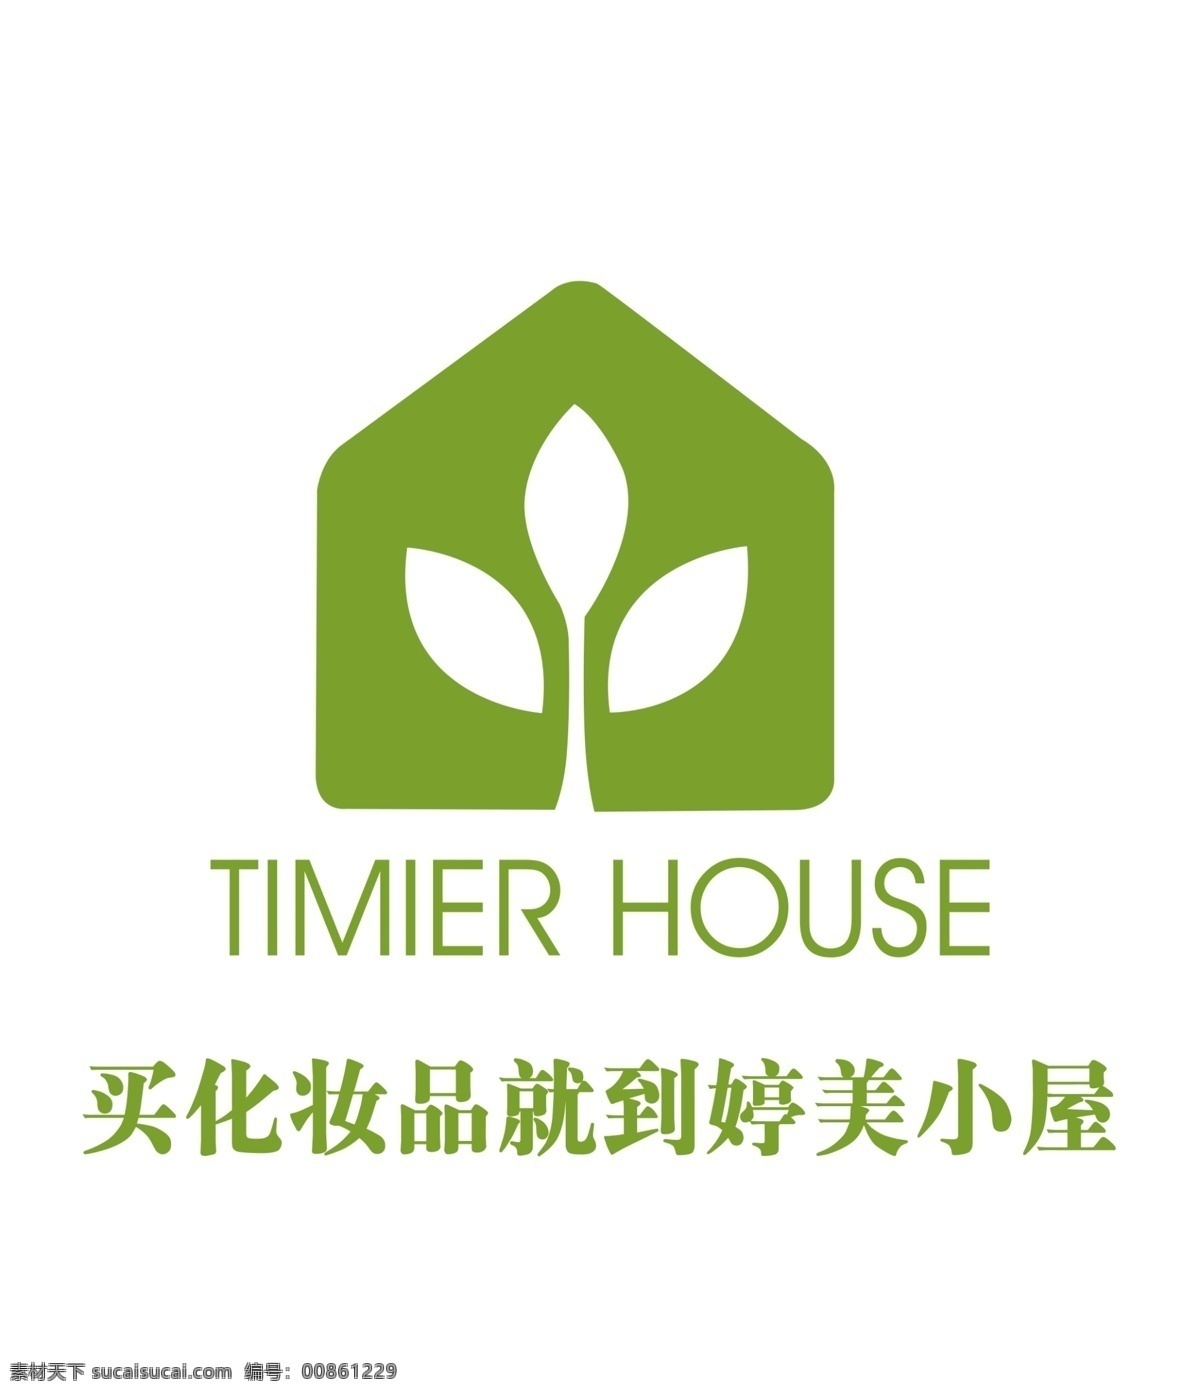 三叶草 logo 树叶标志 企业 绿色 logo设计